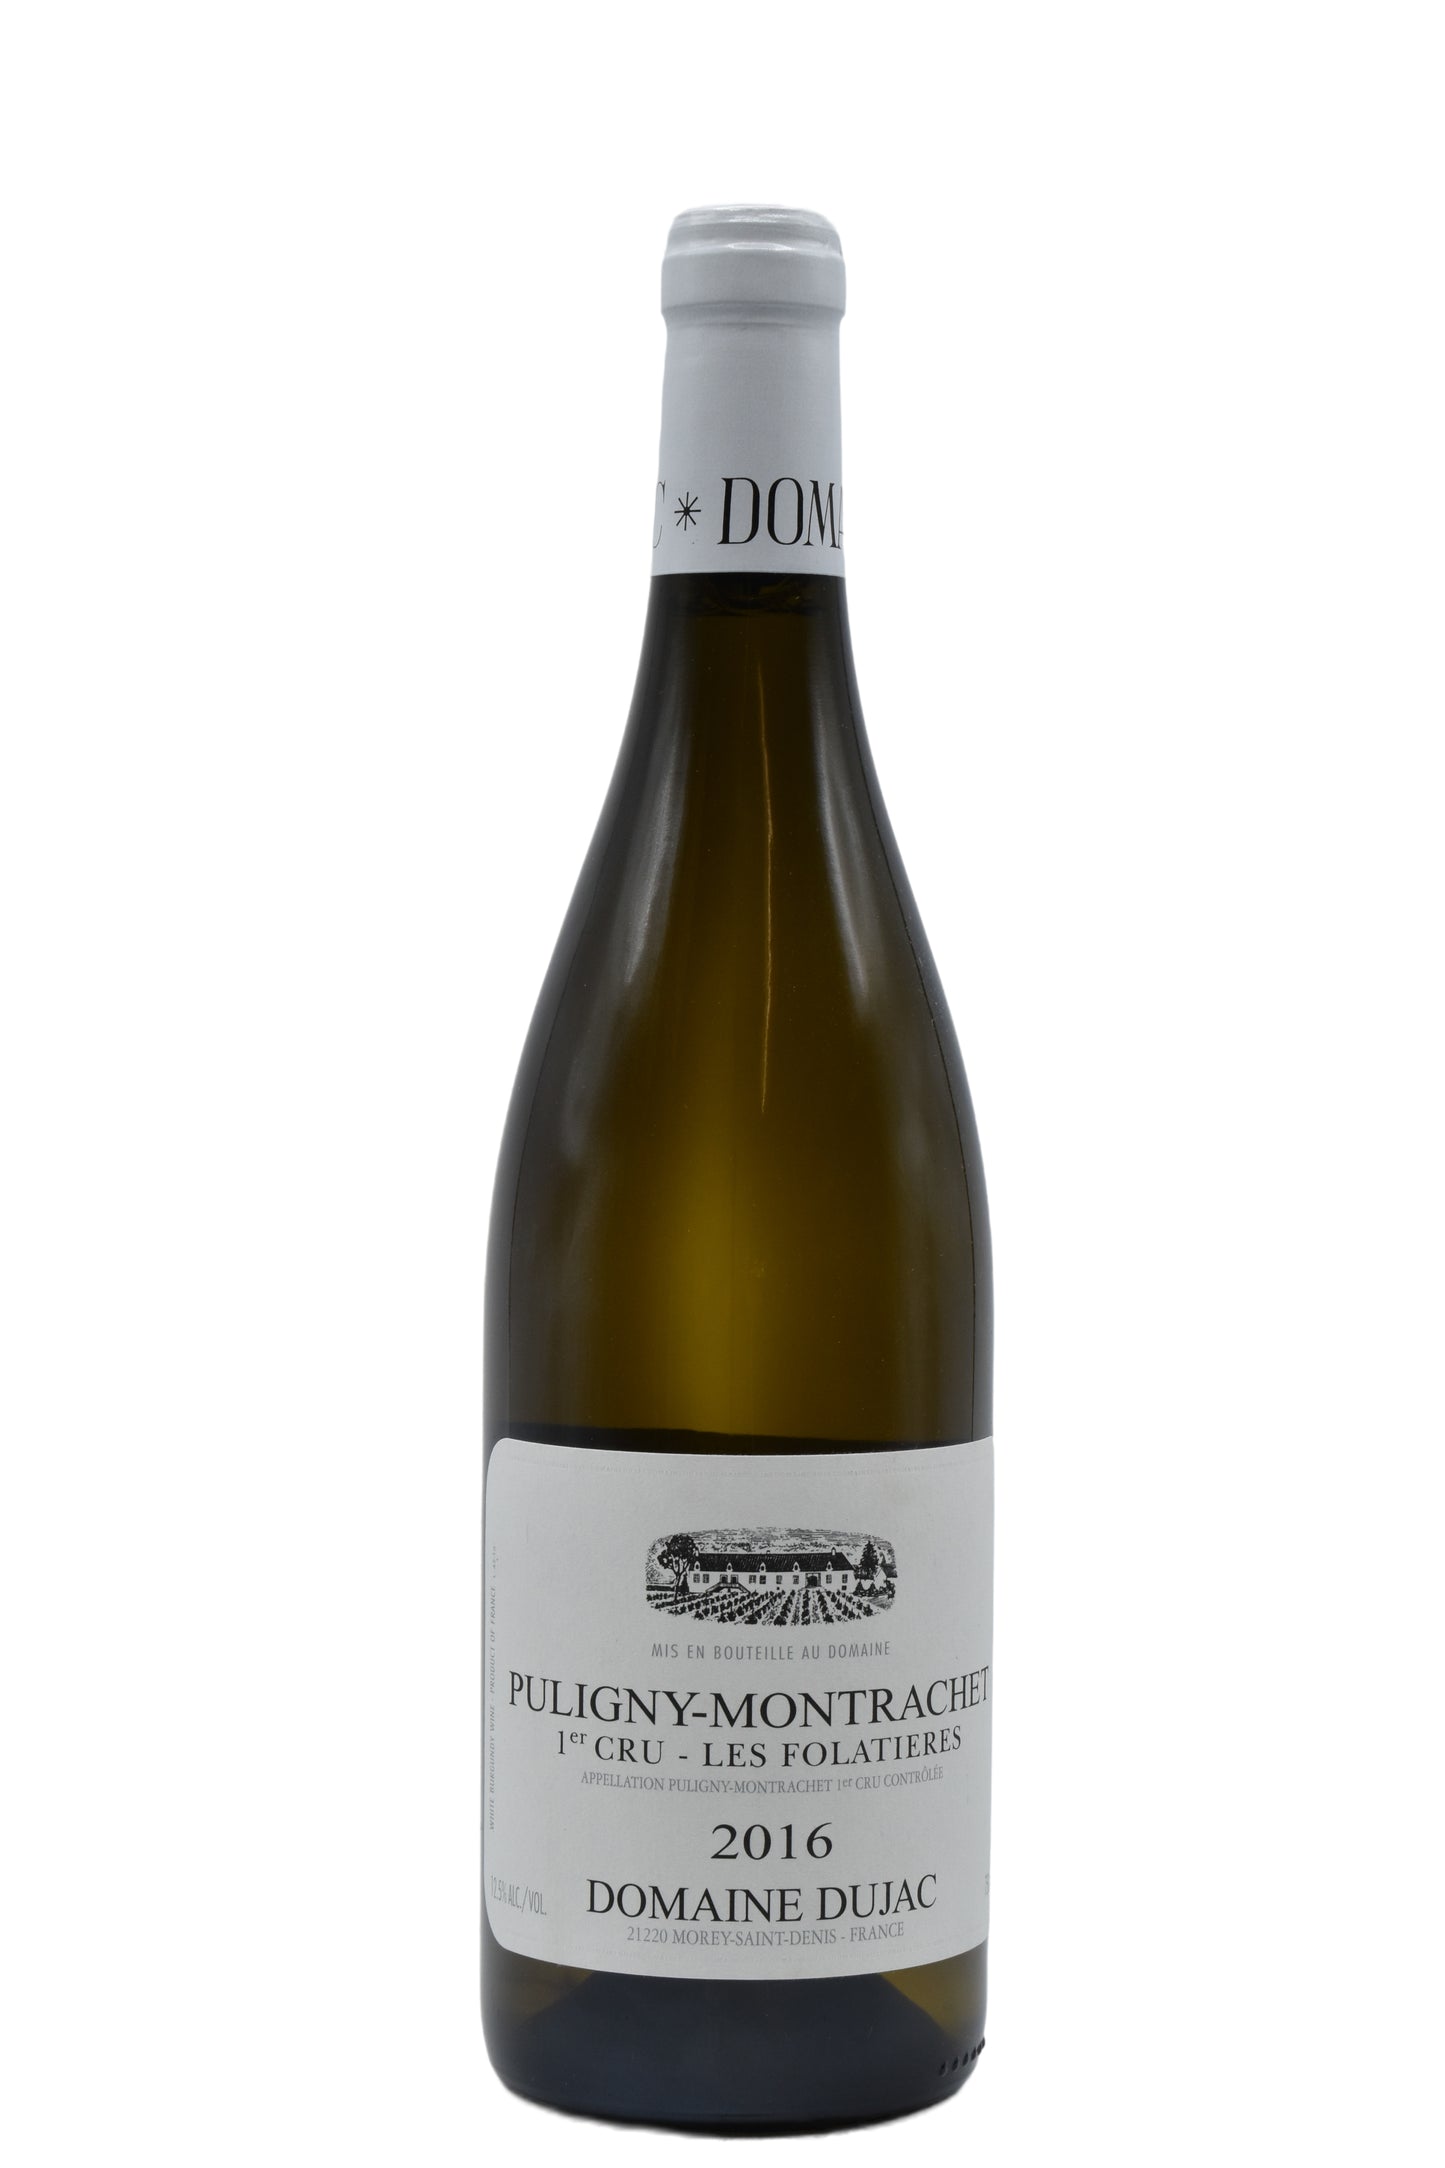 2016 Domaine Dujac, Puligny-Montrachet 1er Cru, les Folatieres 750ml - Walker Wine Co.